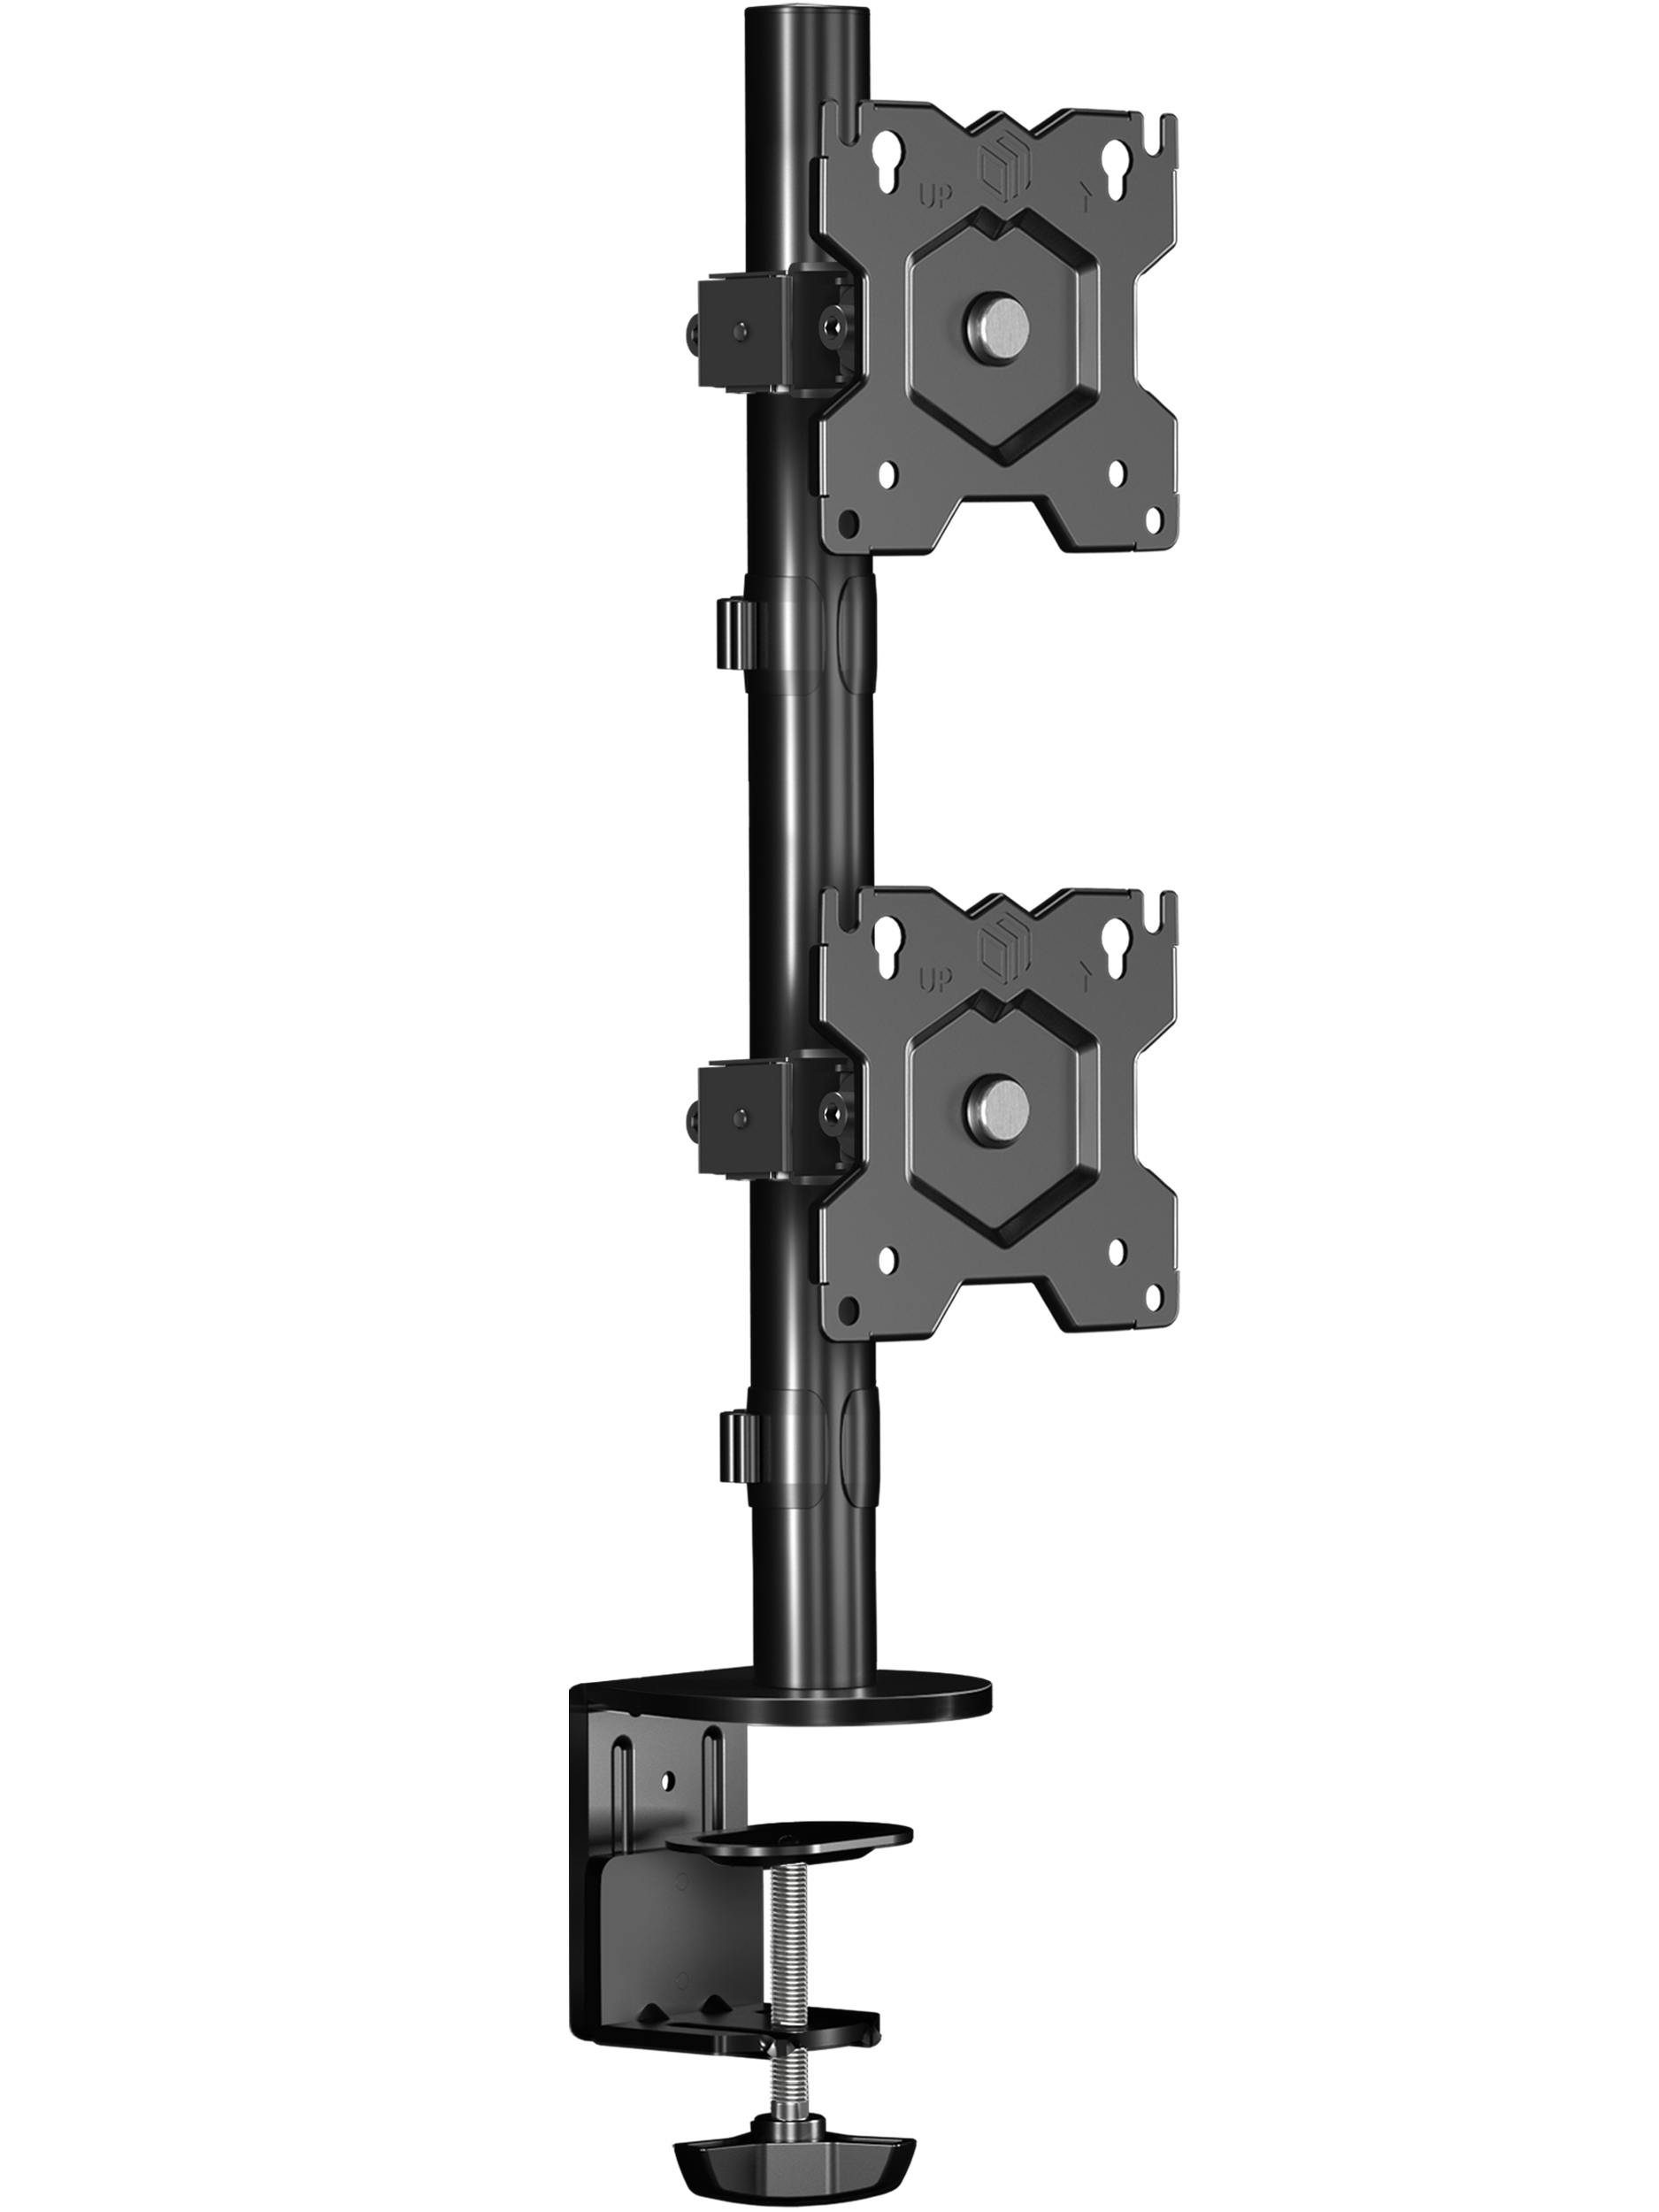 ONKRON Soporte para dos monitores 13-34 en vertical, carga máx 8 kg